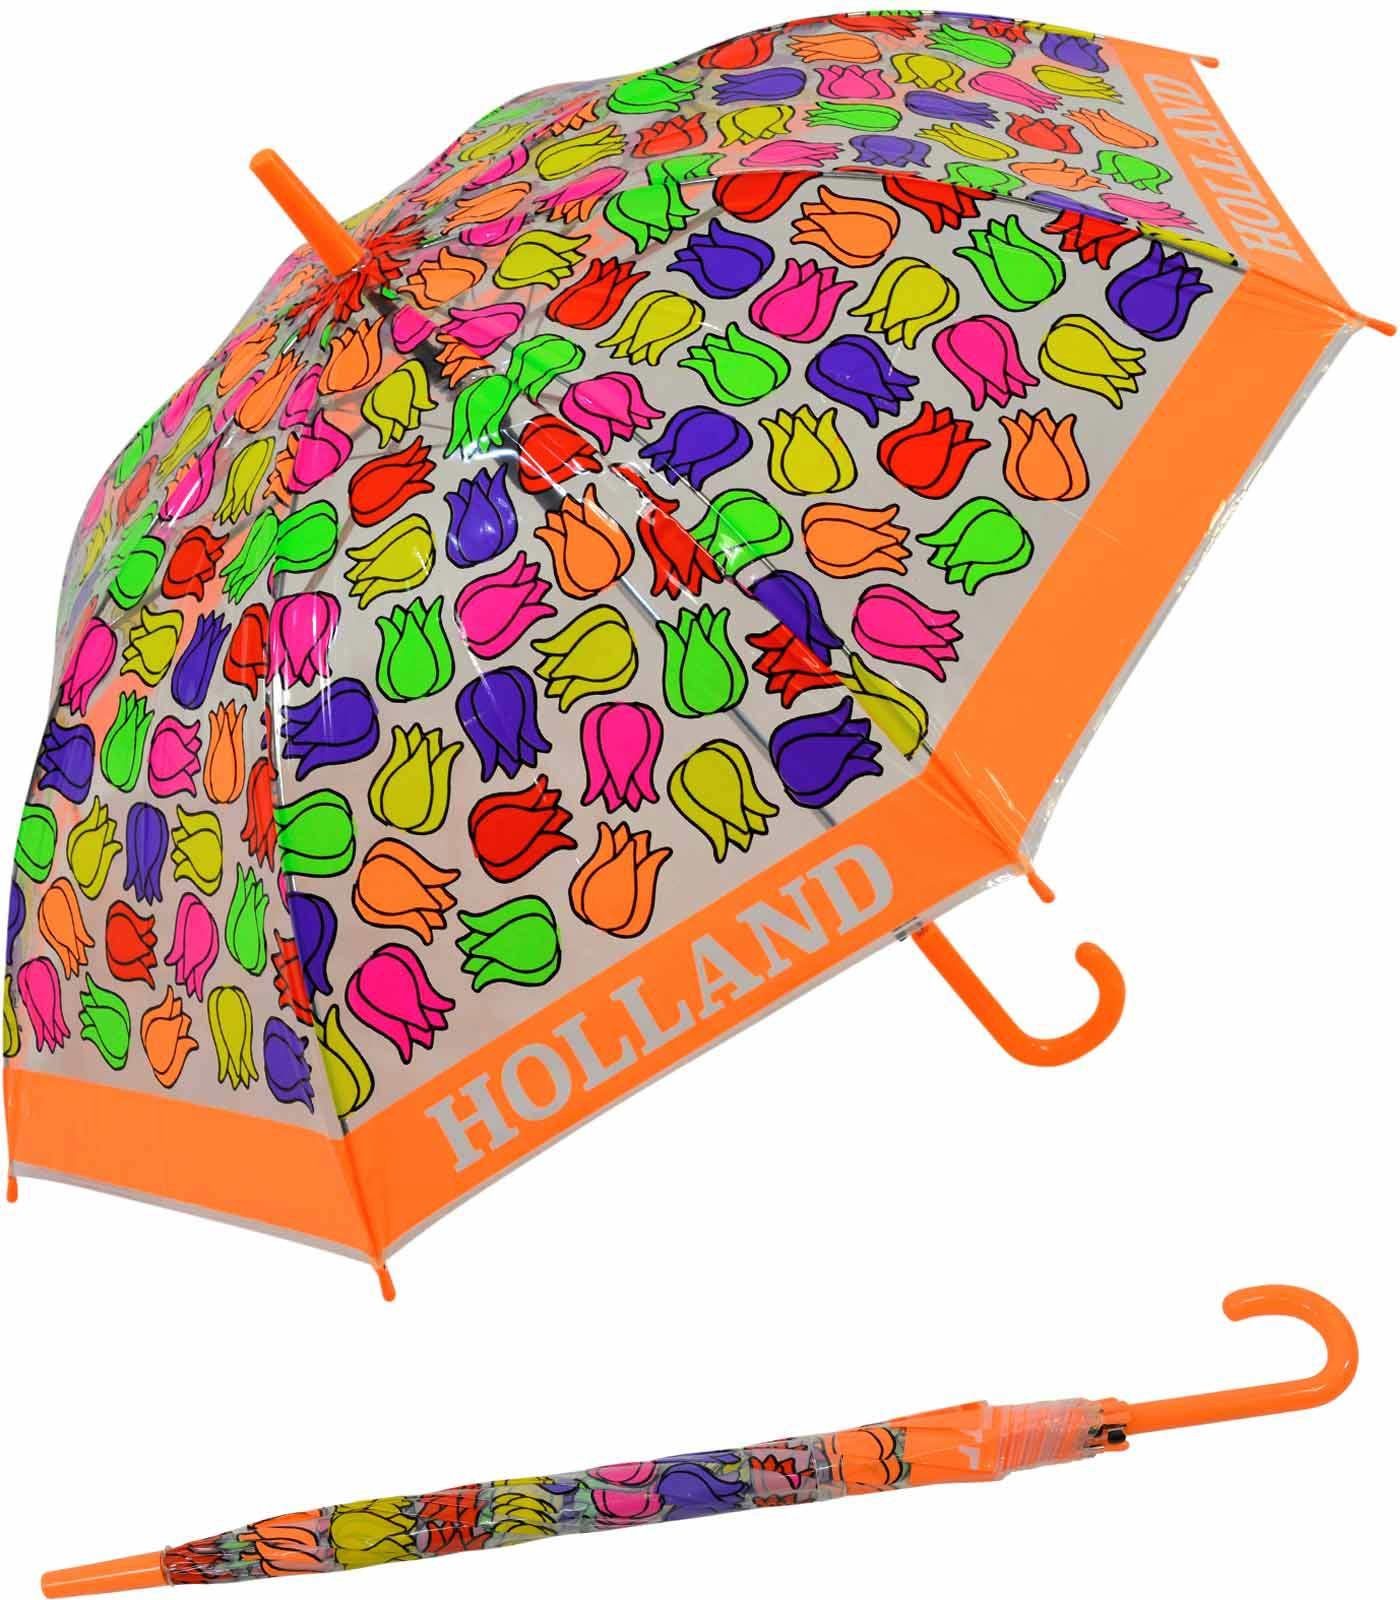 Impliva Langregenschirm Falconetti Kinderschirm bunt transparent - Tulpen, durchsichtig orange